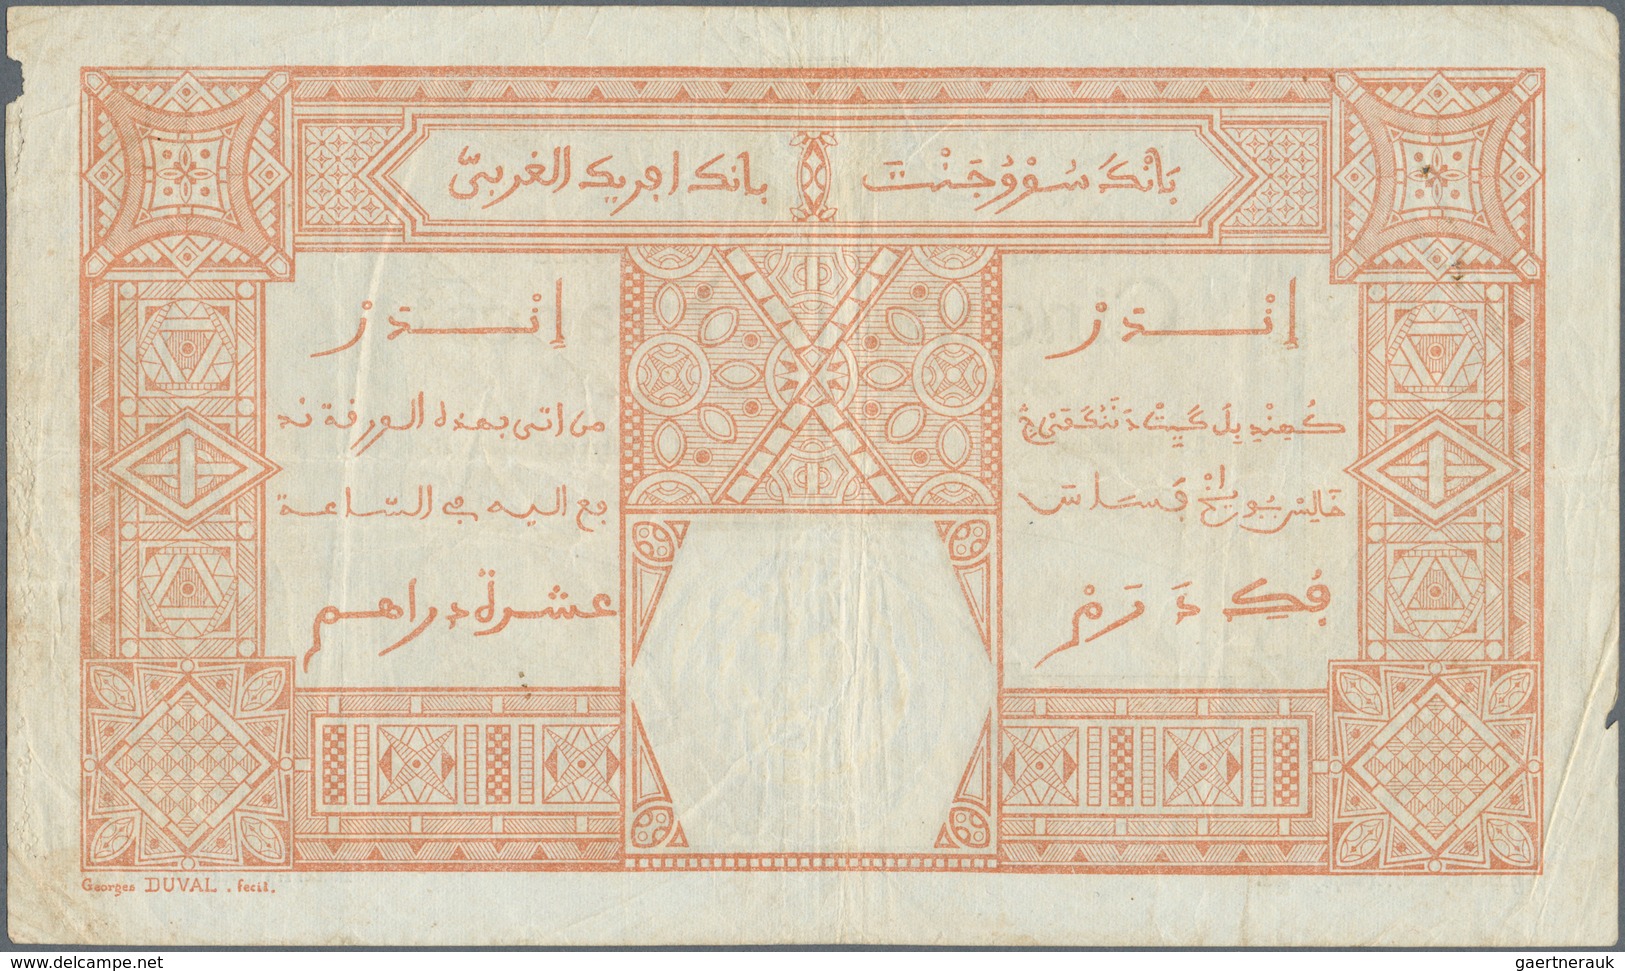 French West Africa / Französisch Westafrika: 50 Francs 1929 DAKAR P. 9Bc, With Additional Serial Num - États D'Afrique De L'Ouest